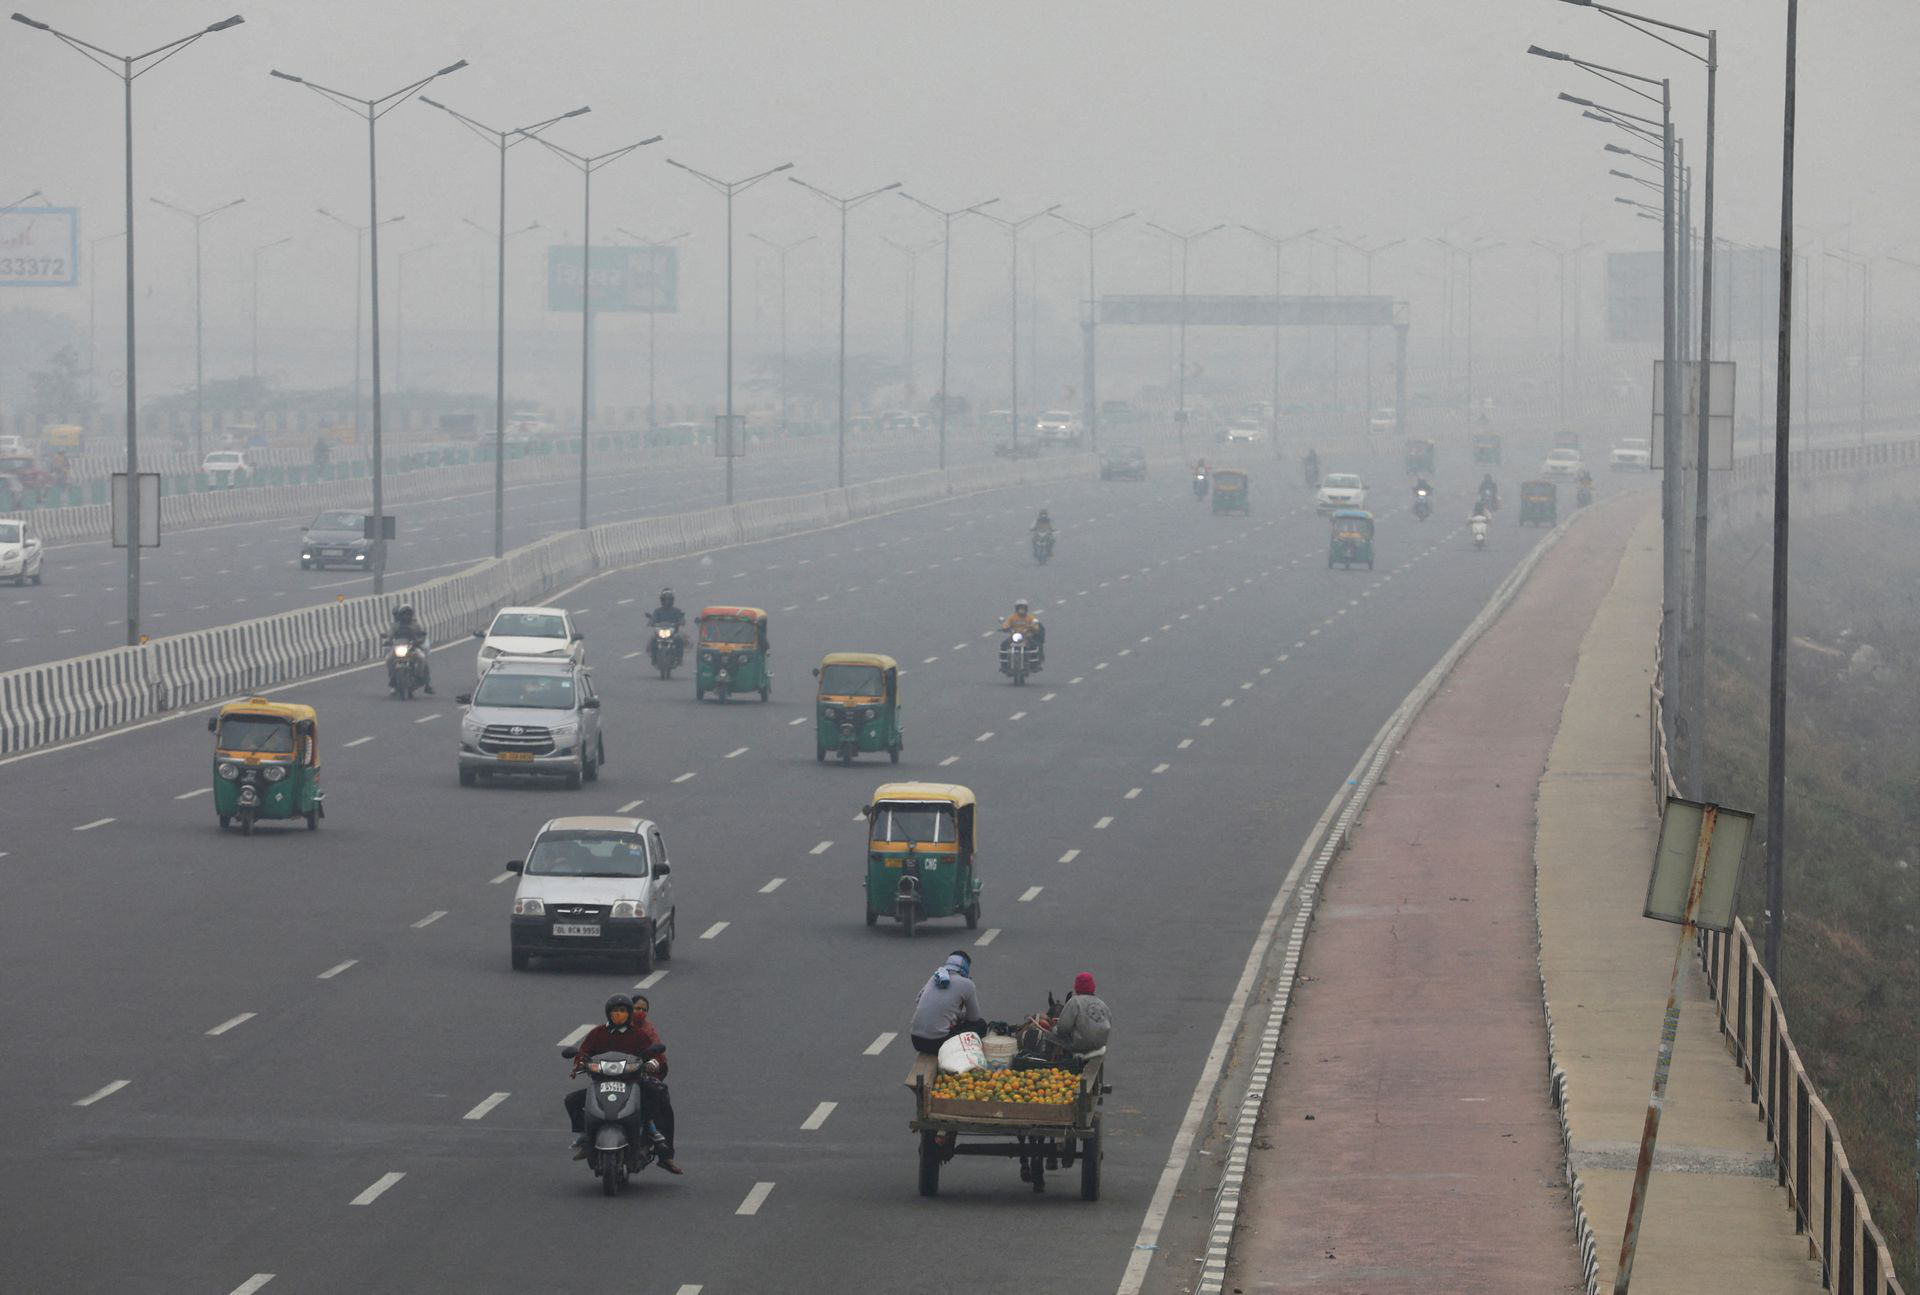 Ô nhiễm không khí nghiêm trọng, cư dân New Delhi kêu gọi đóng cửa trường học - Ảnh 2.